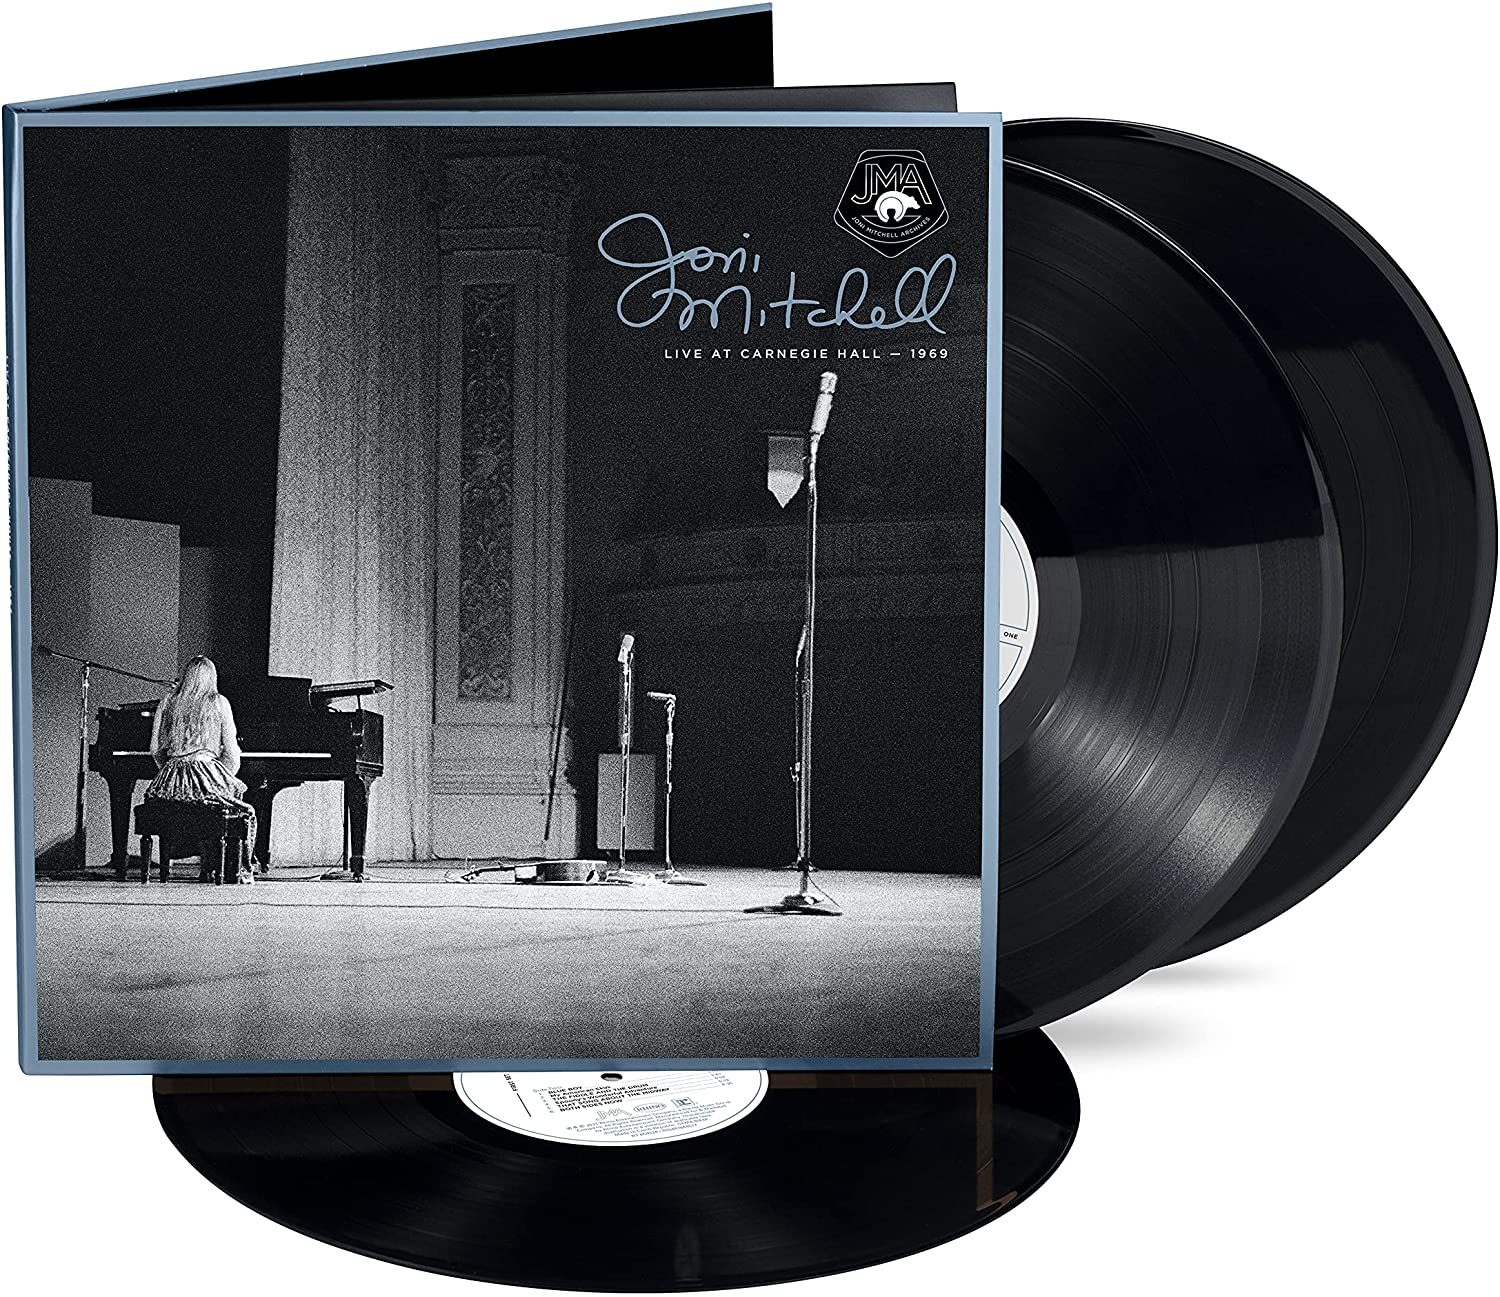 Joni Mitchell - Live At Carnegie Hall 1969 (Rhino)